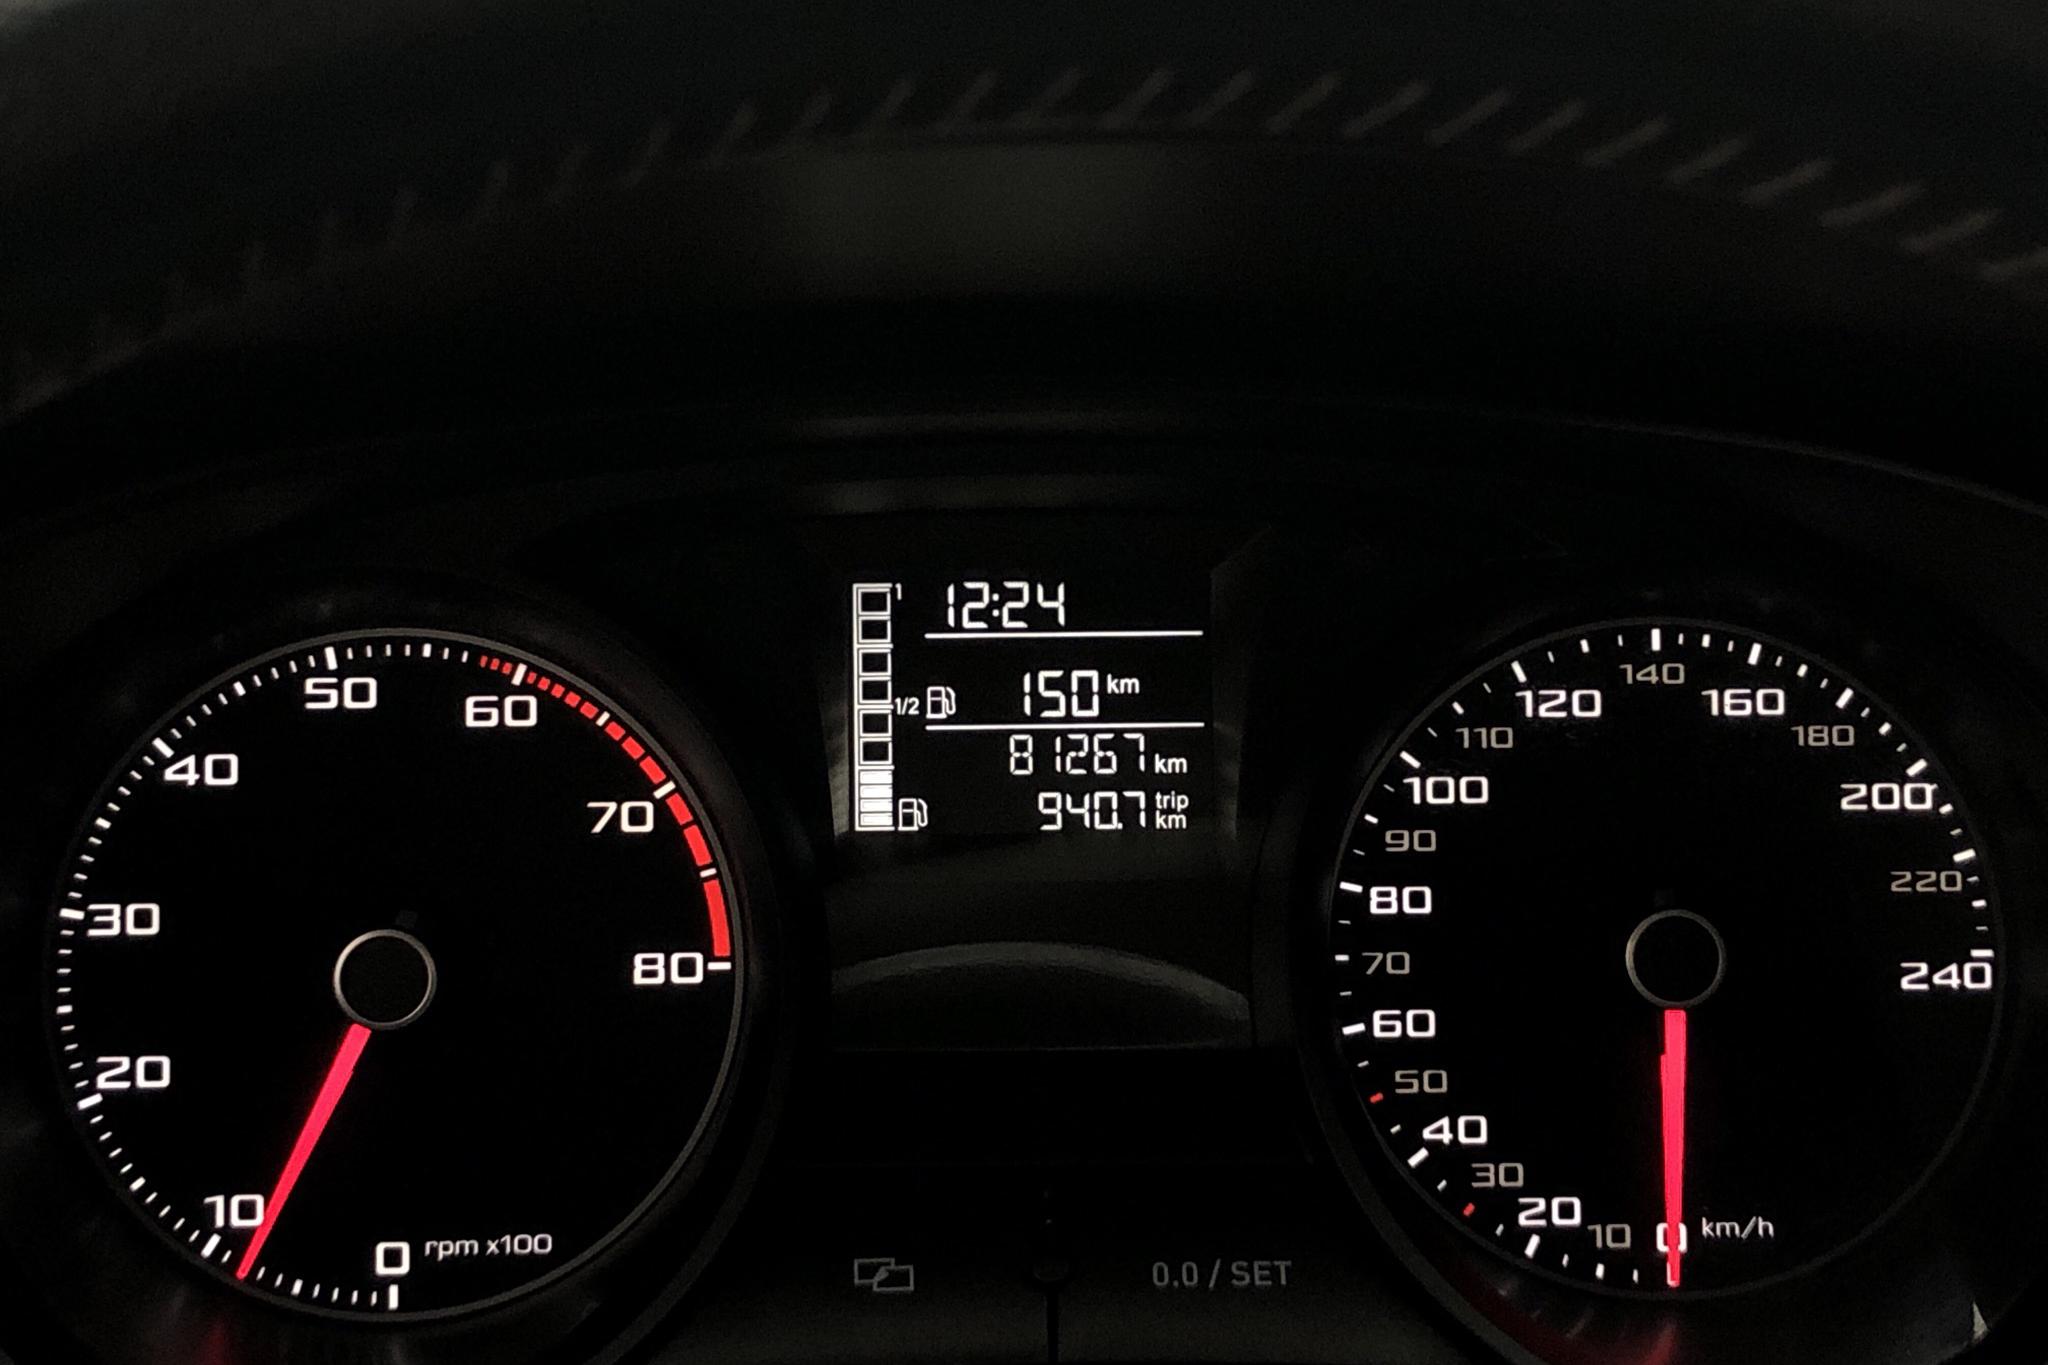 Seat Ibiza 1.2 TSI 5dr (85hk) - 81 260 km - Manual - white - 2014